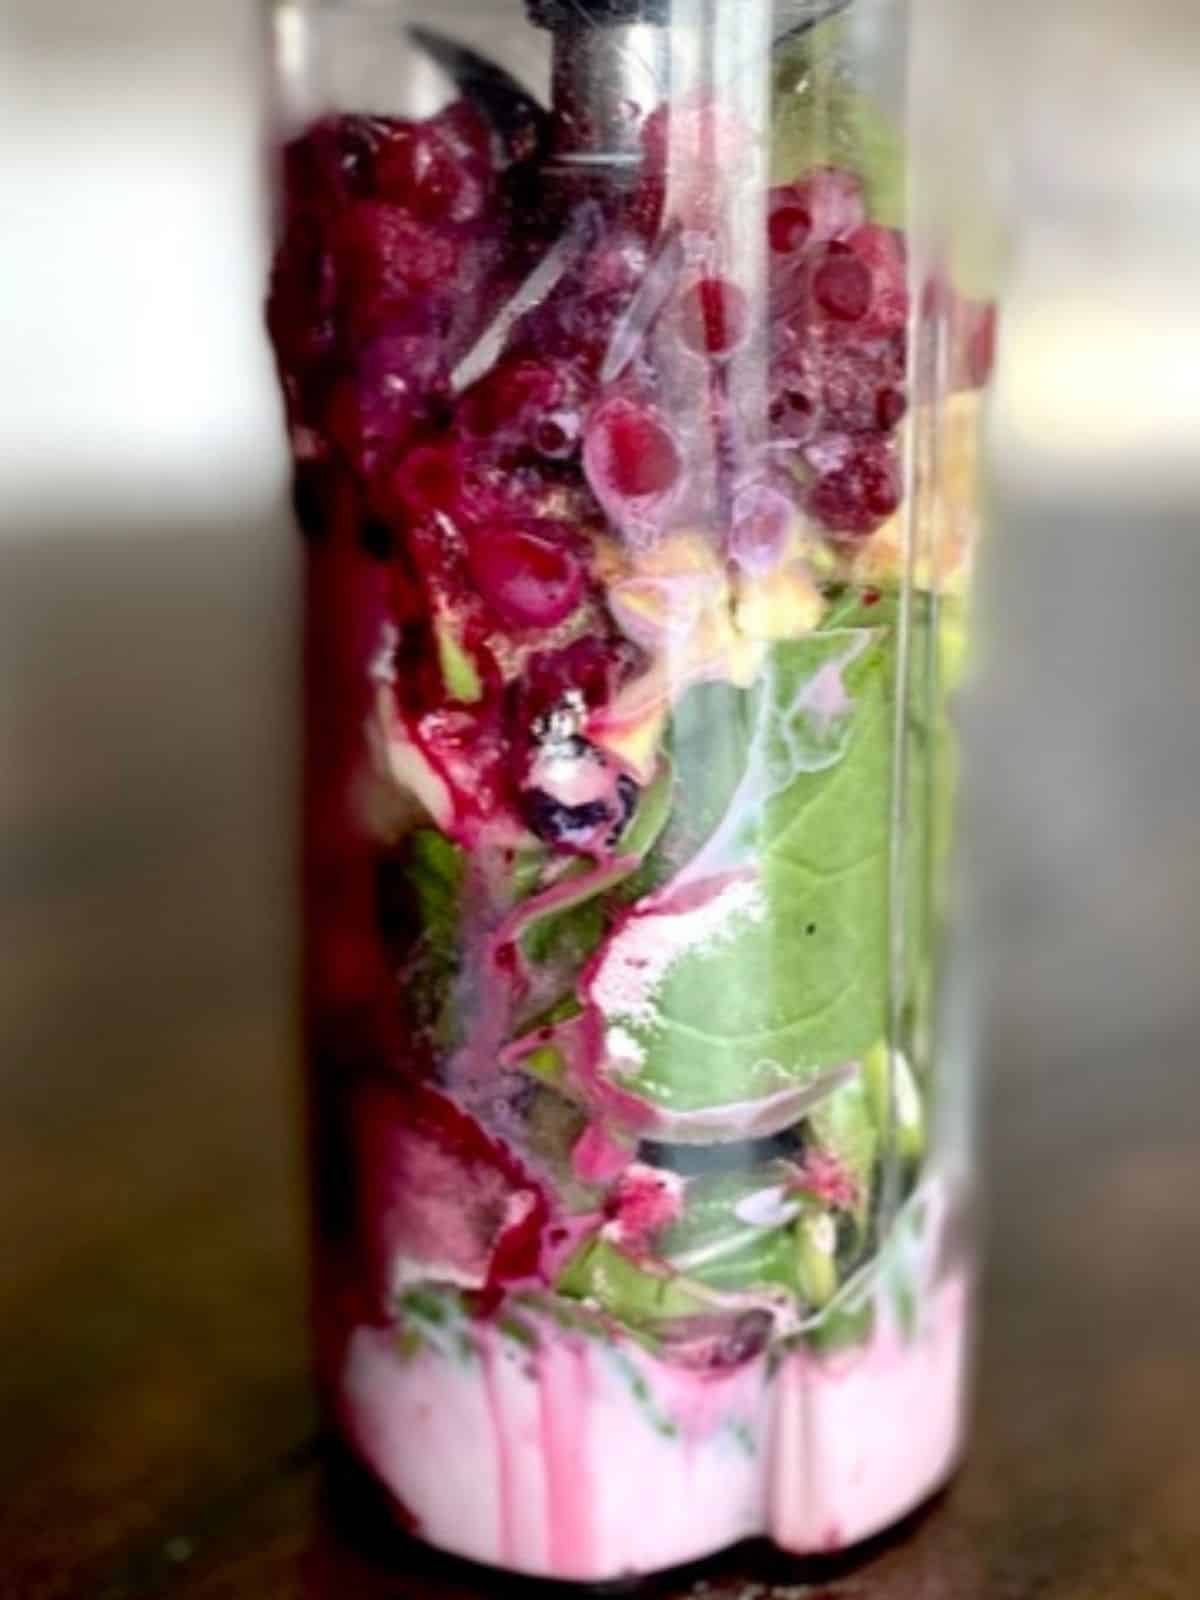 glow smoothie bowl ingredients in blender jar